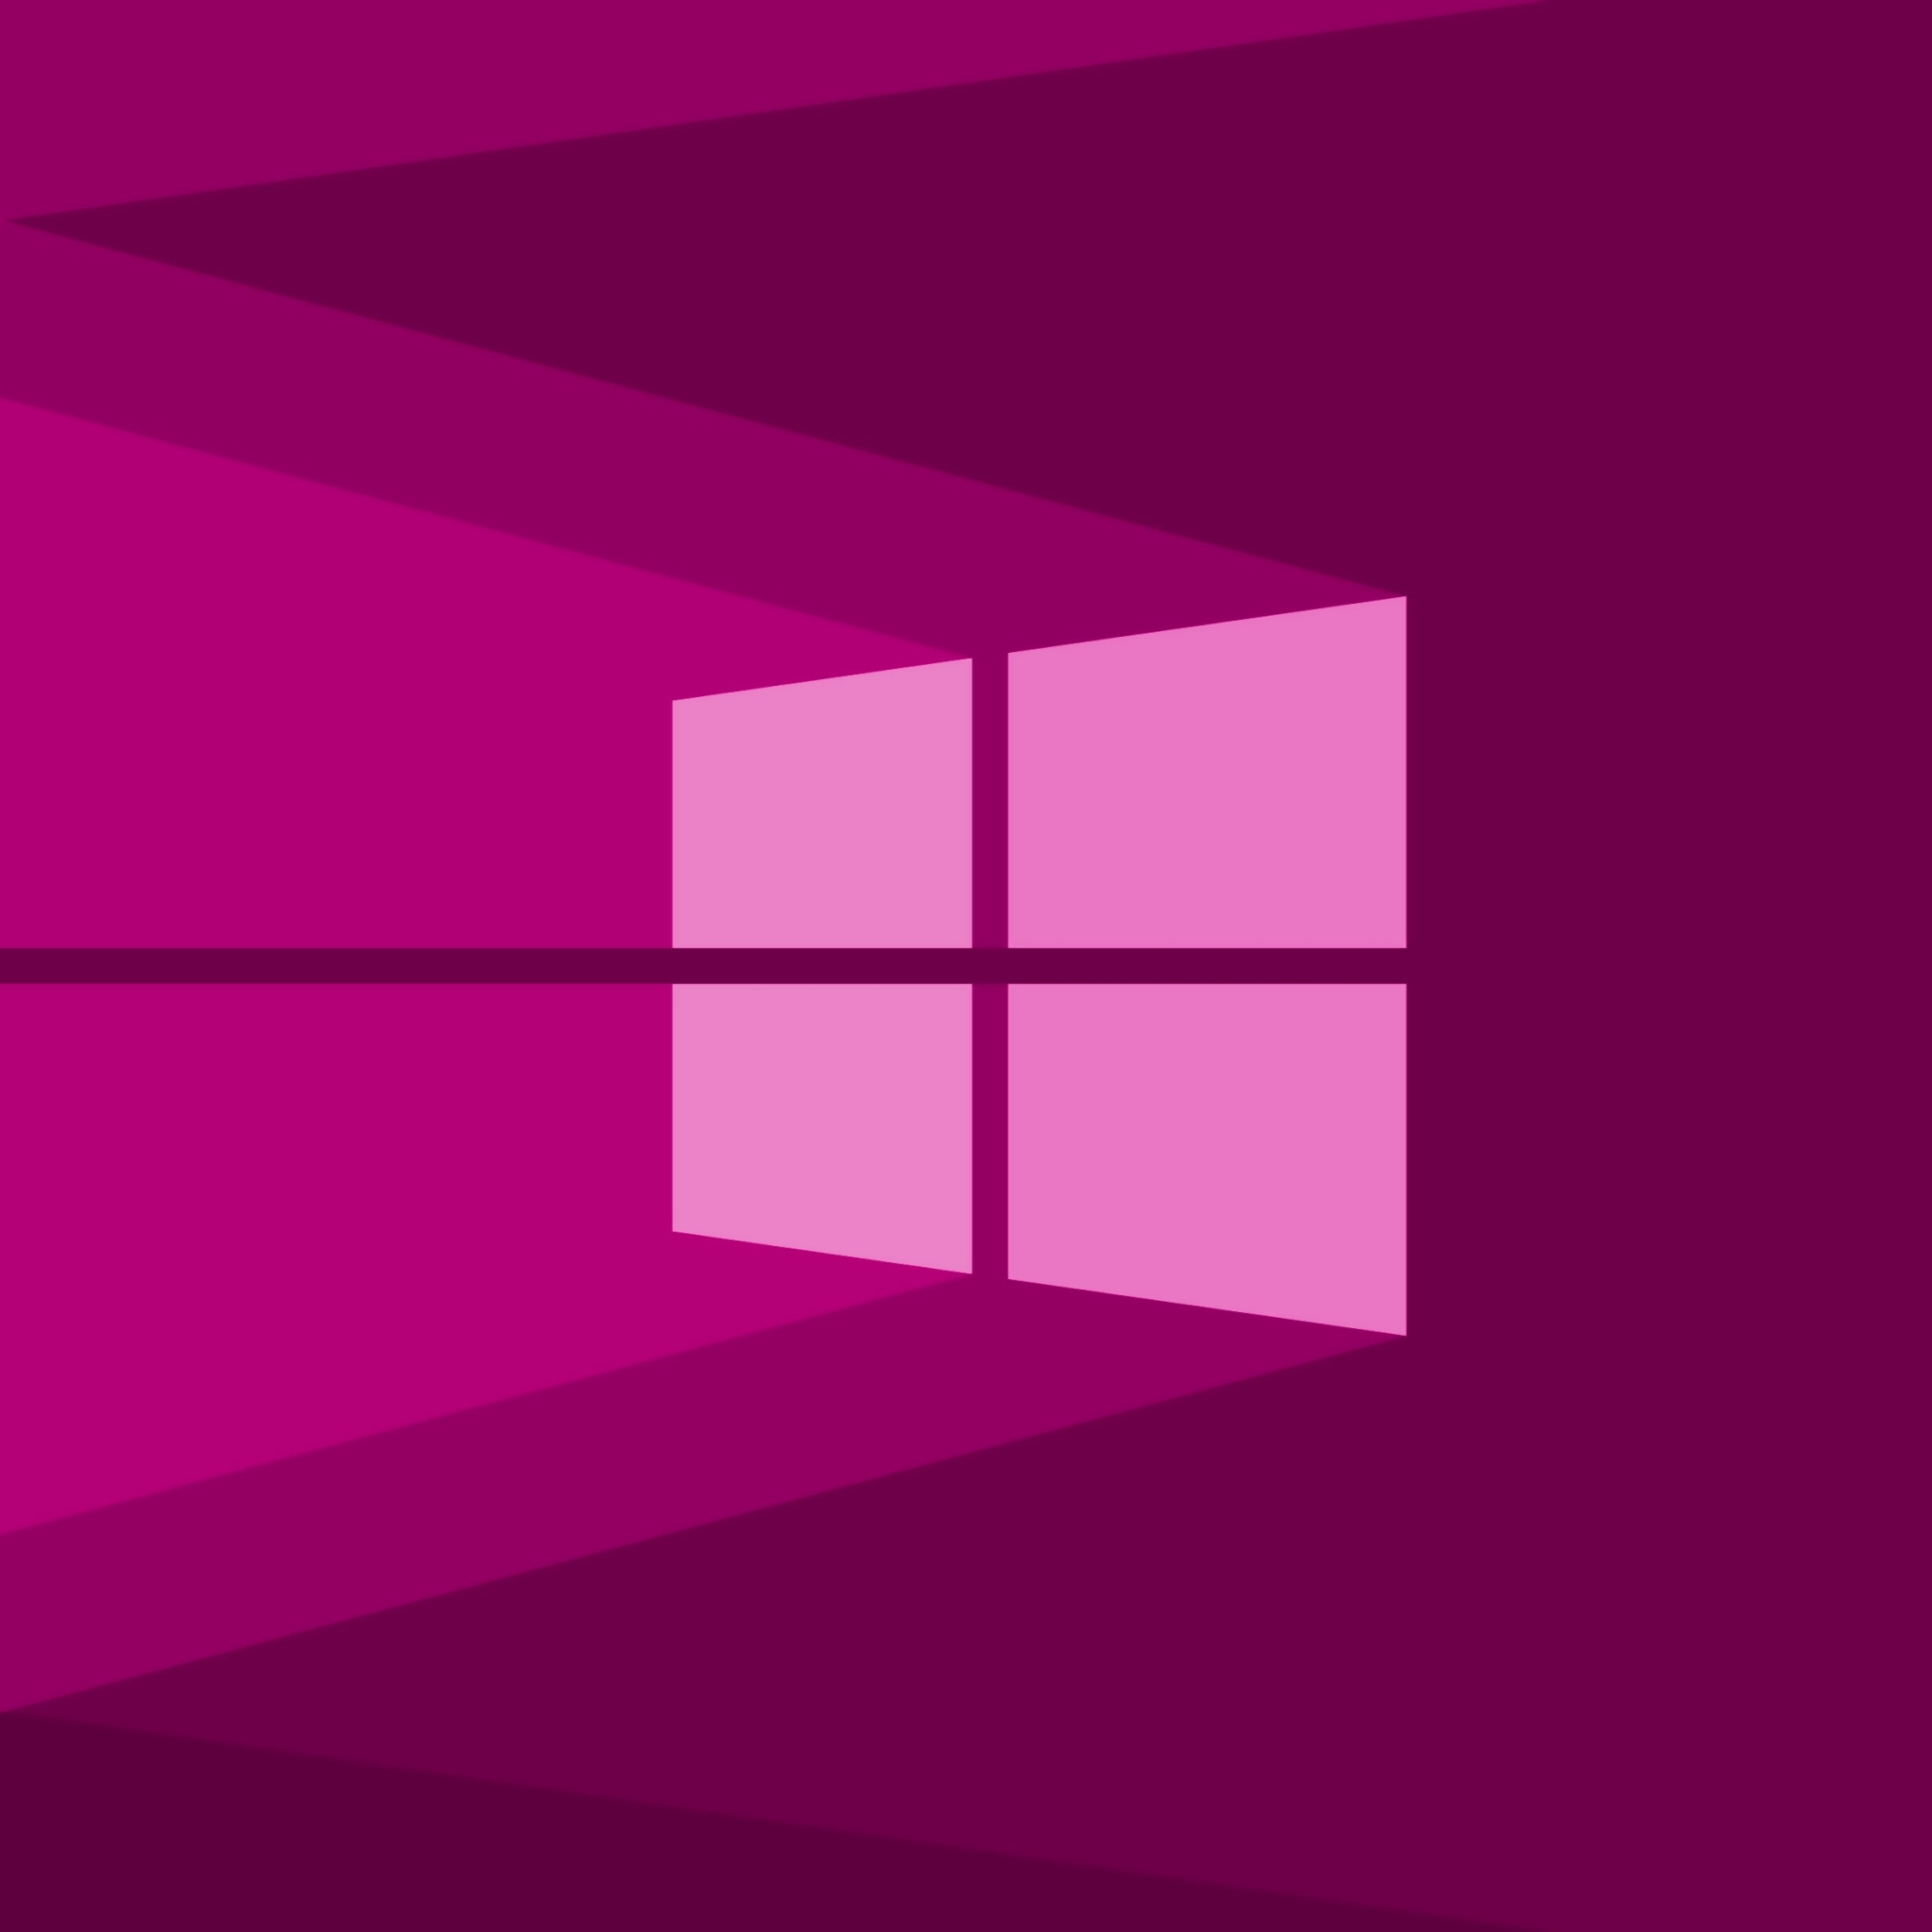 2048x2048 Resolution Windows 10 4k Purple Ipad Air Wallpaper